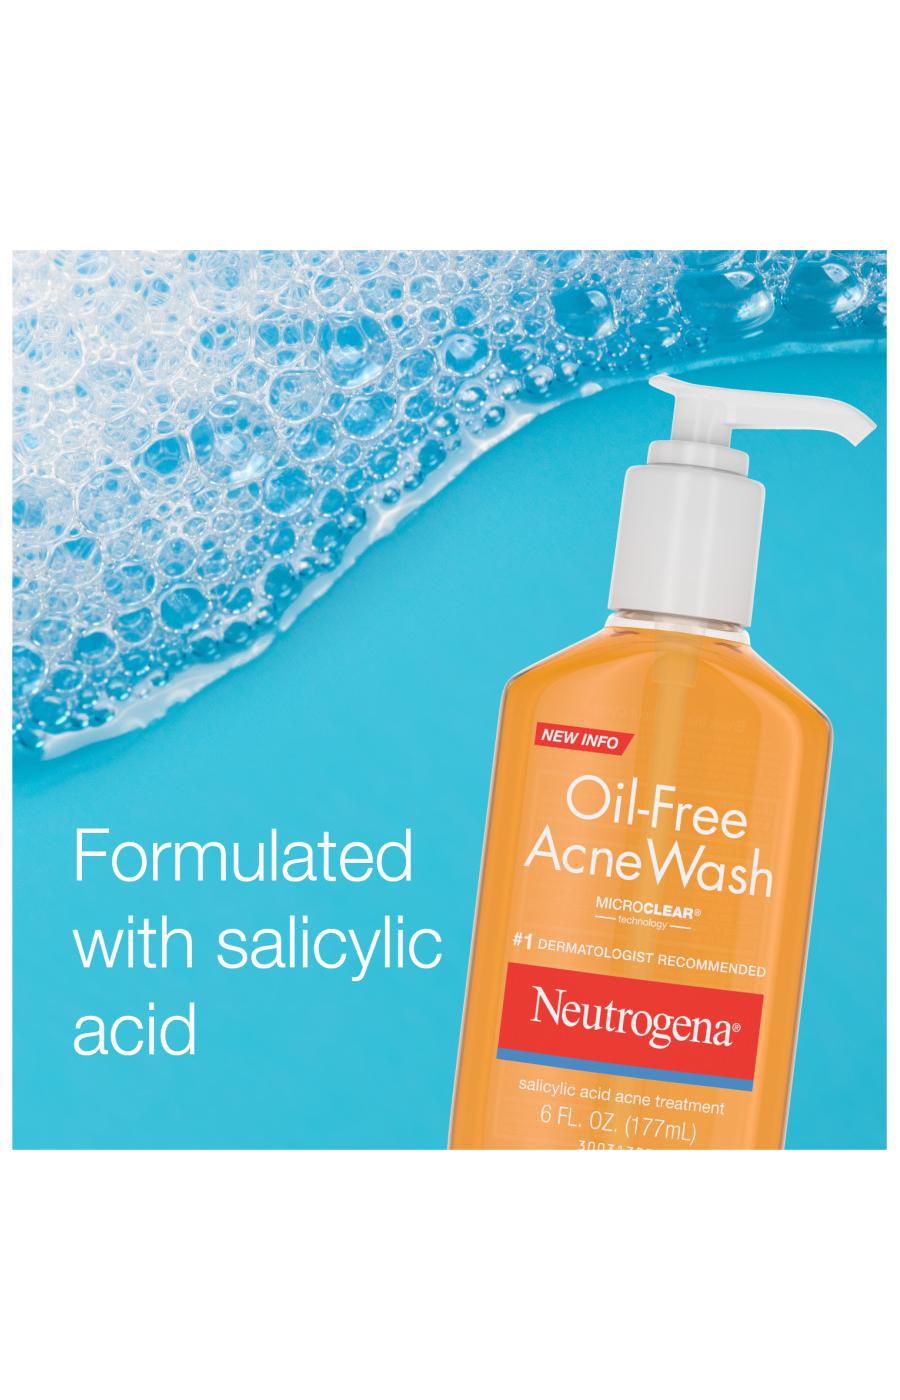 Neutrogena Oil-Free Acne Wash; image 5 of 7